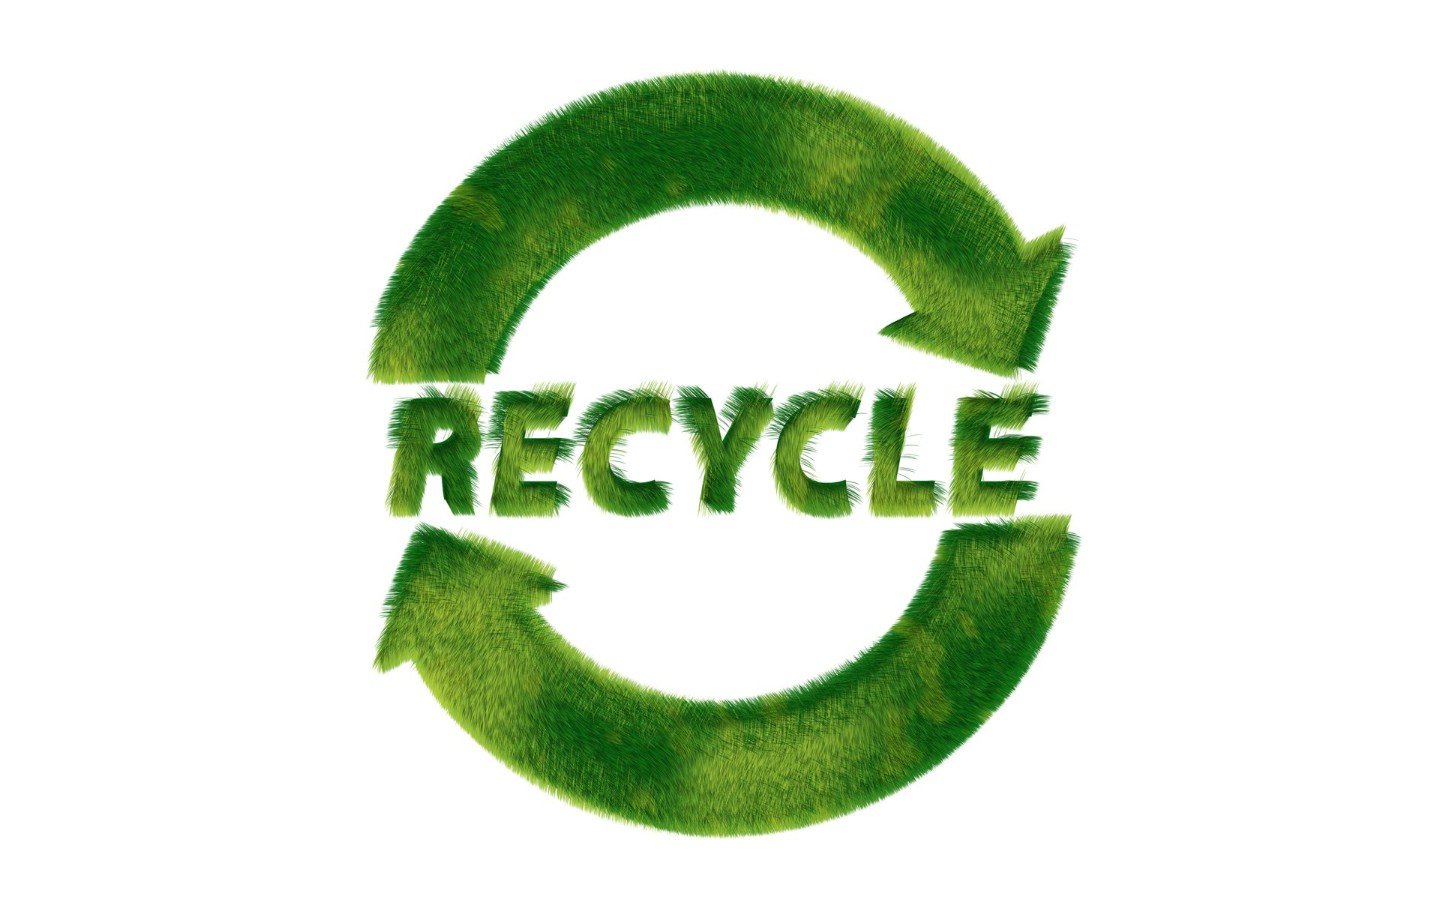 壁纸1440x900 Recycle Sign Recycle Symbols 1920 1200壁纸 绿色和平环保标志-循环利用壁纸 绿色和平环保标志-循环利用图片 绿色和平环保标志-循环利用素材 插画壁纸 插画图库 插画图片素材桌面壁纸